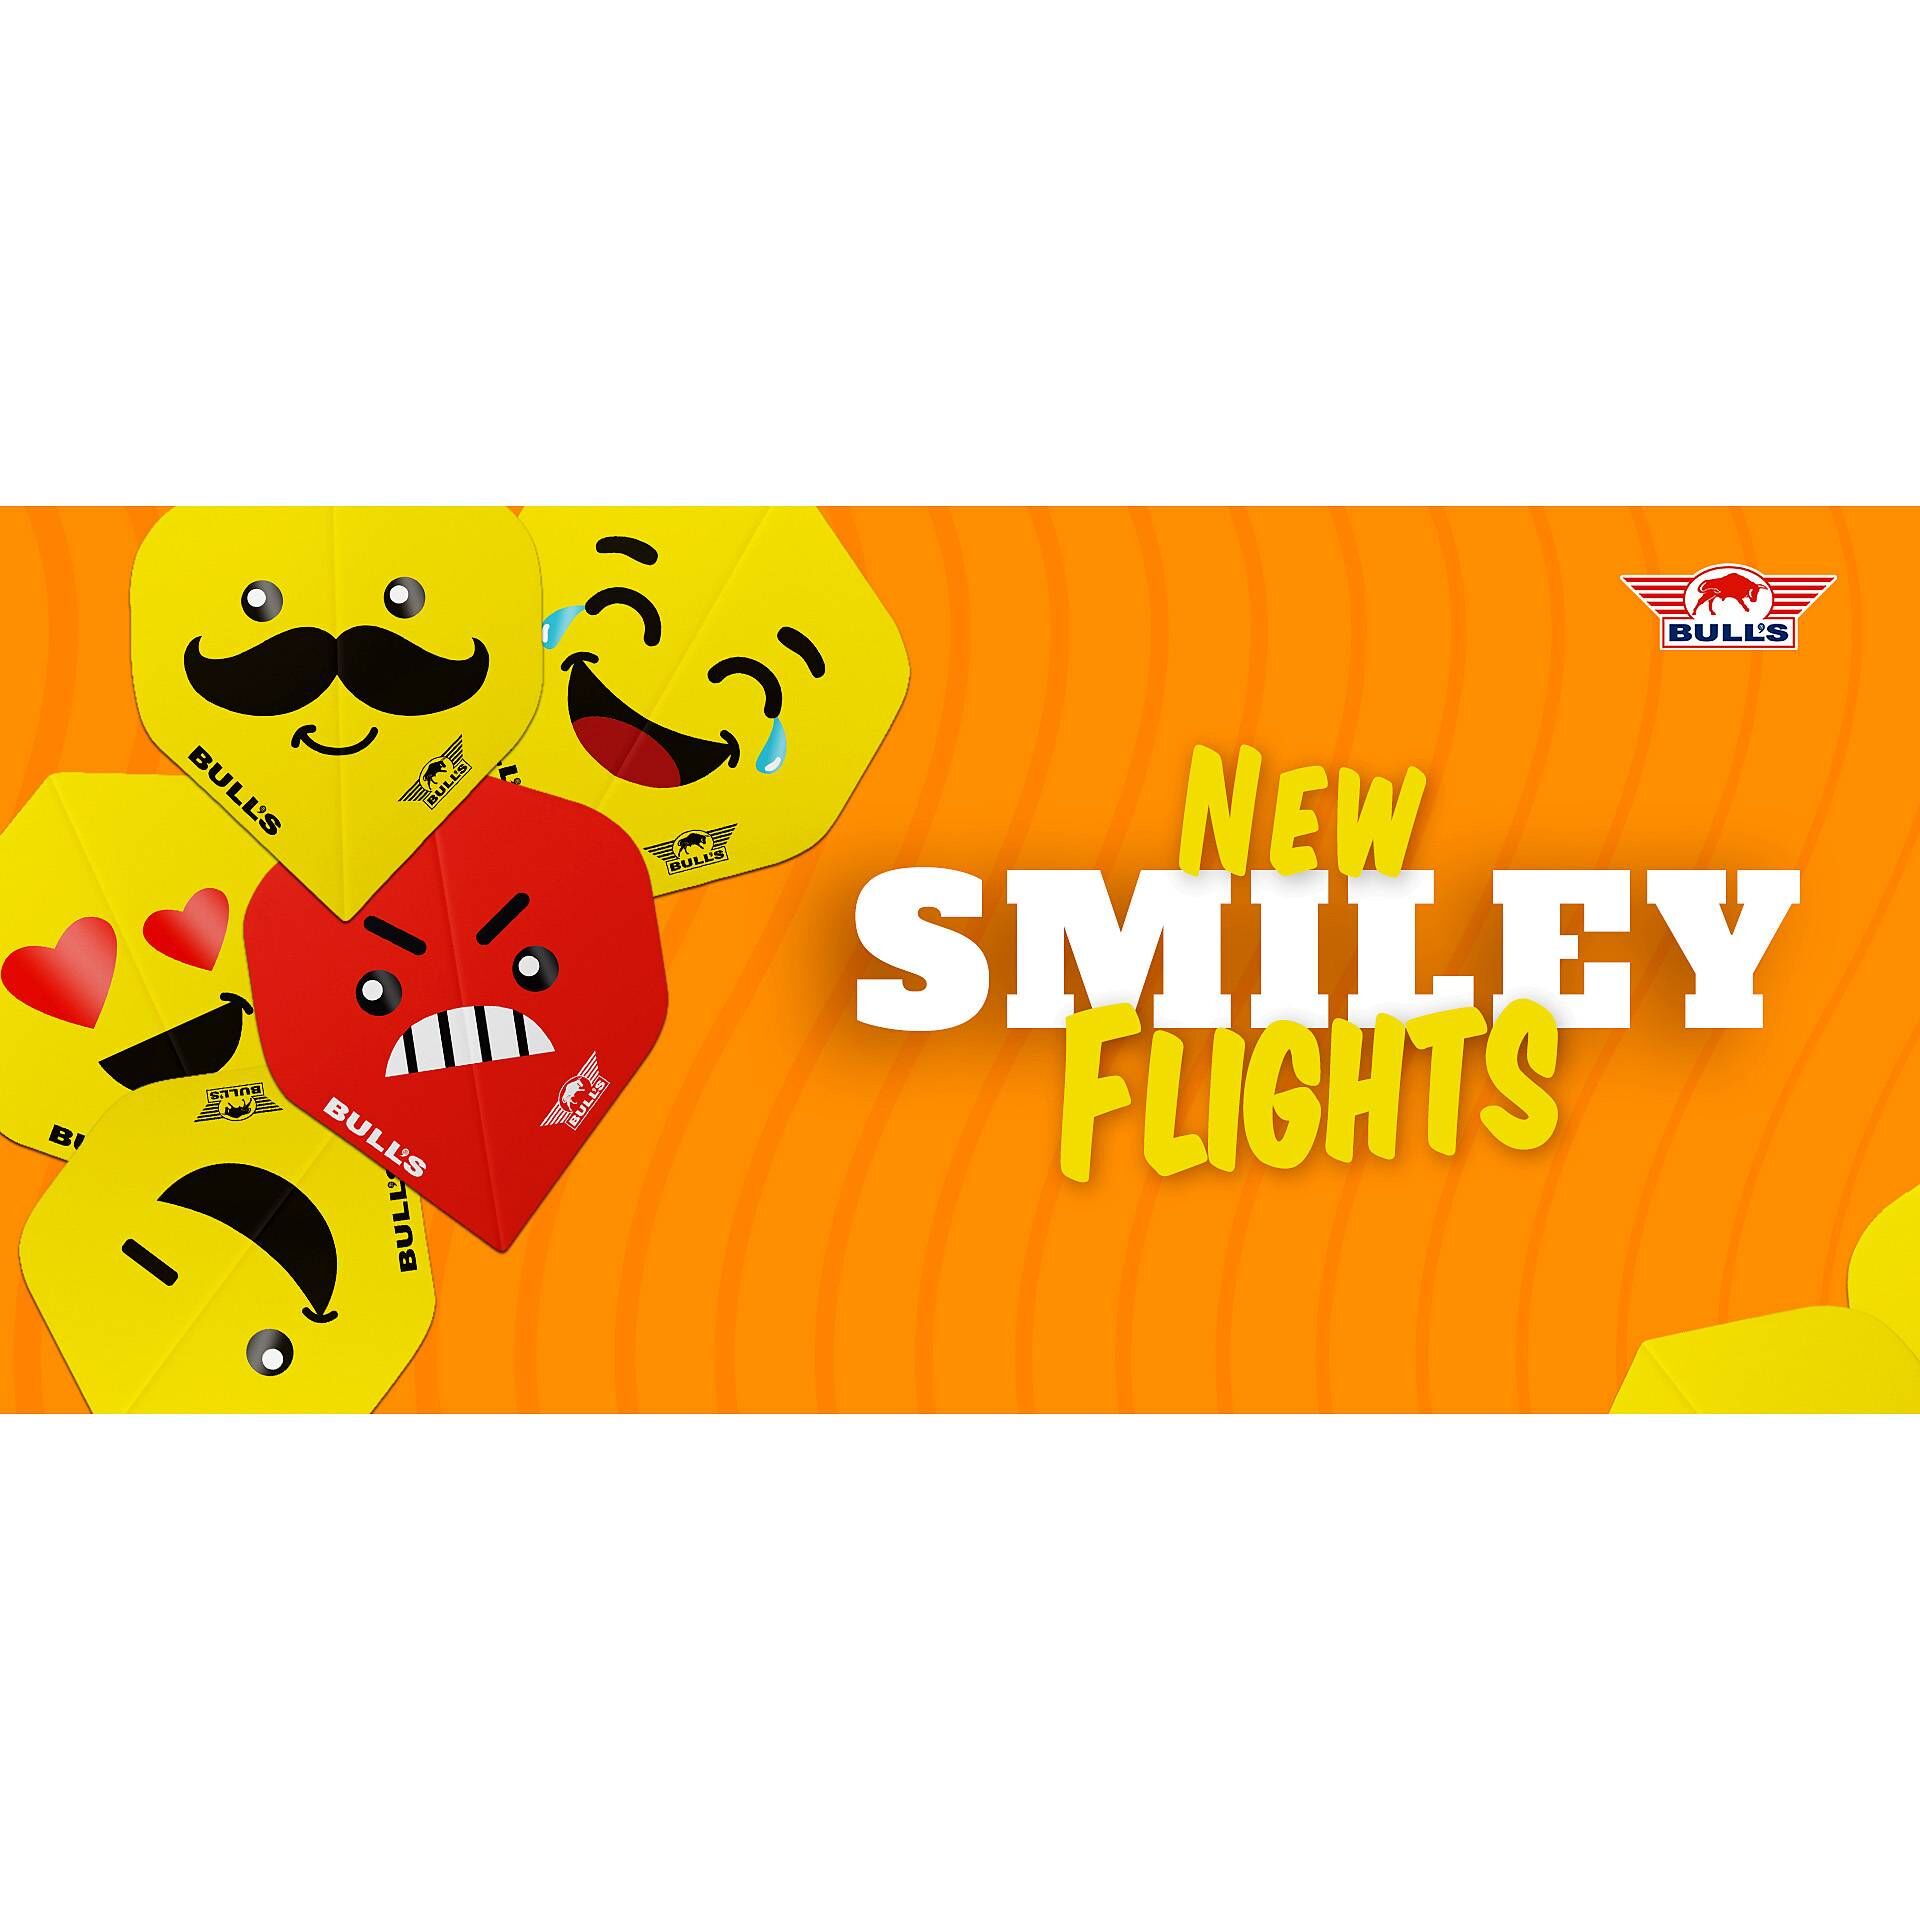 Bull's NL - Smiley Dartflight - Standard